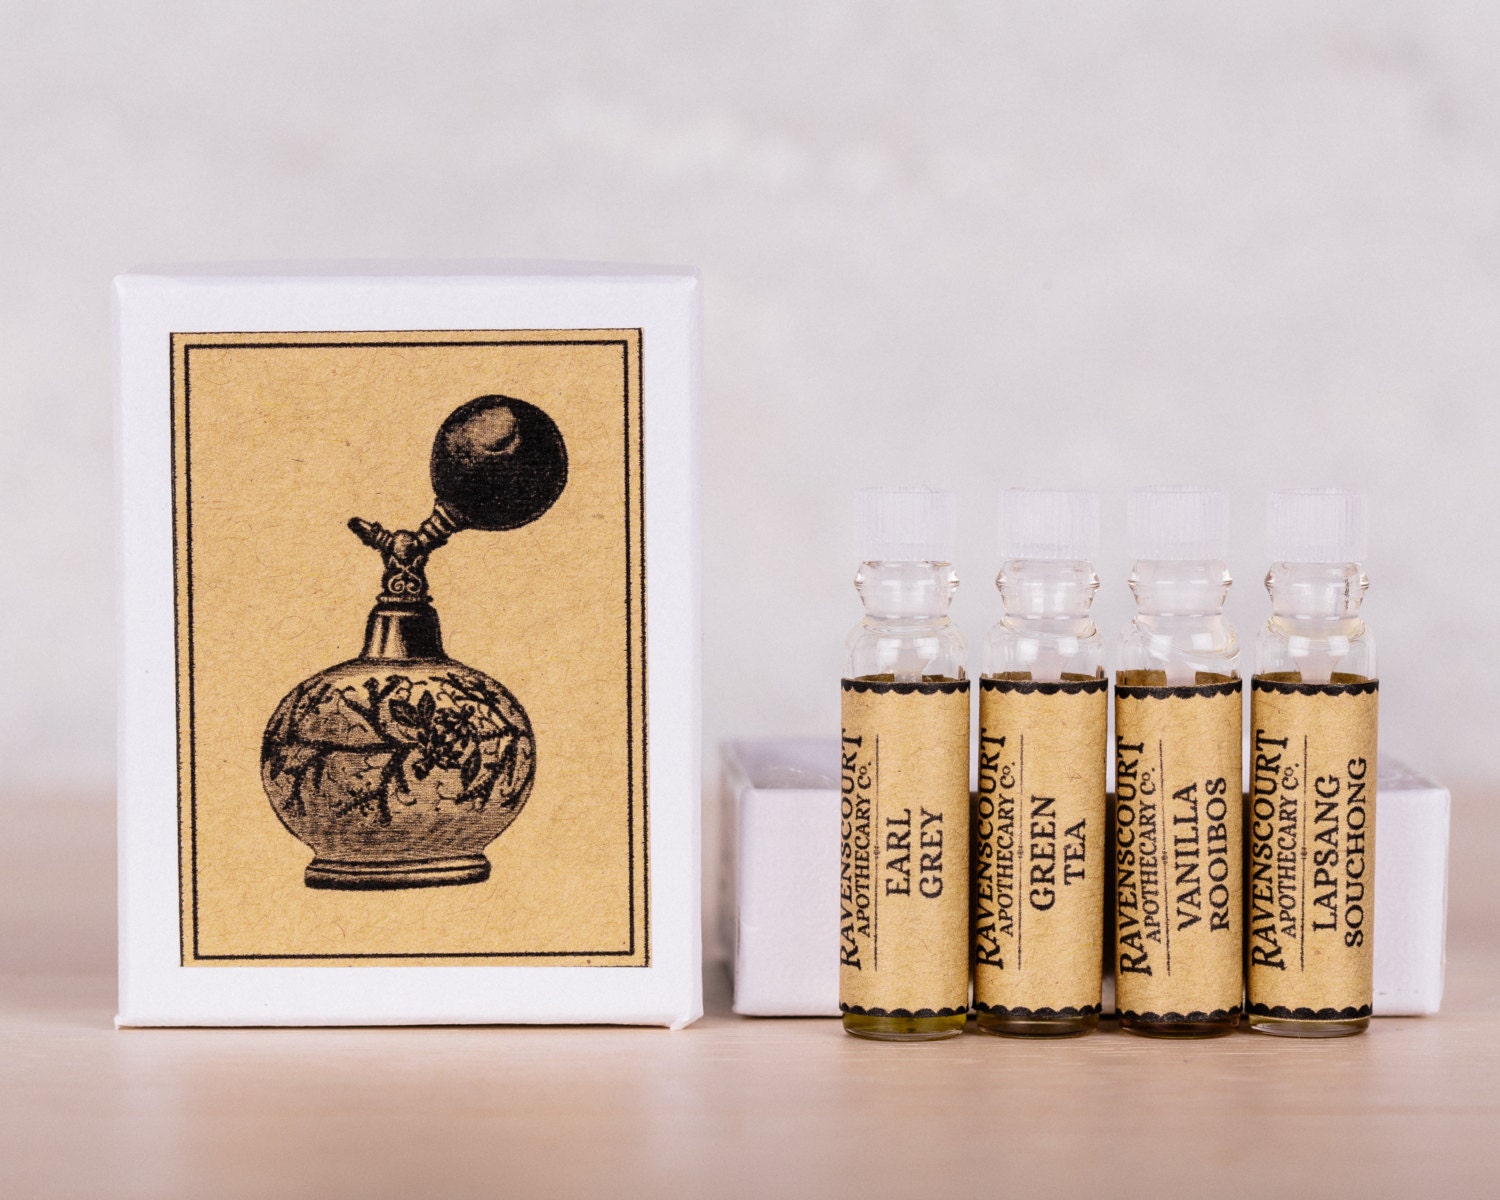 Designer Perfume Sampler Set Lot x 12 Sample Vials - High End Fragrance  Samples for Women, 12 Piece Set